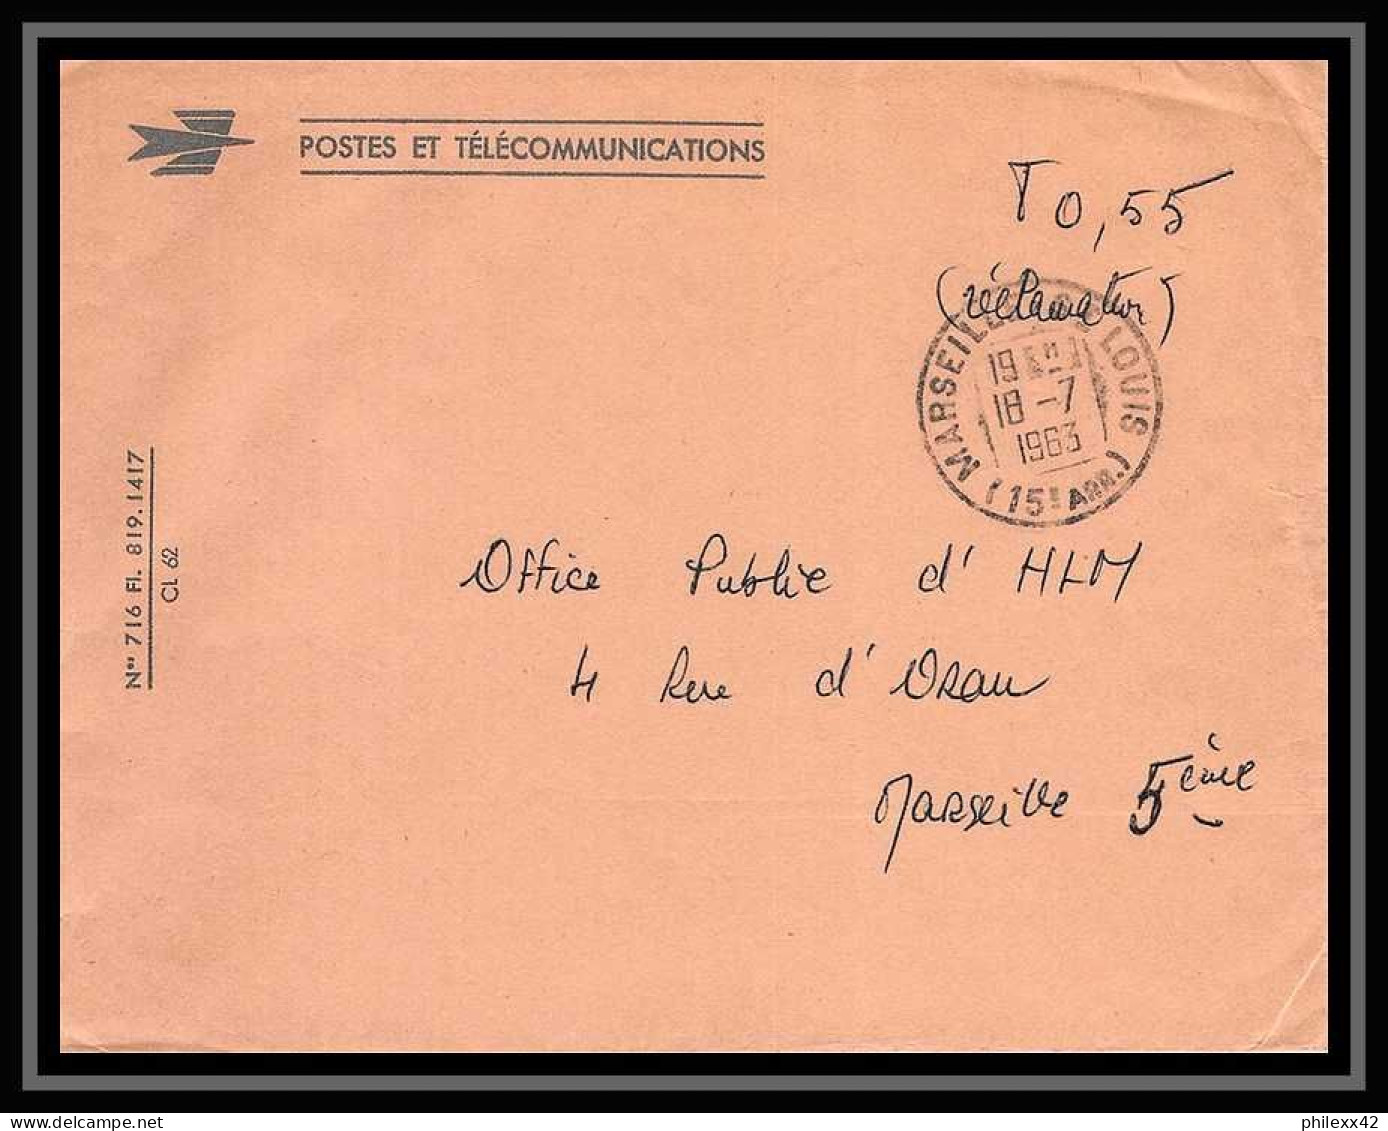 107477 lot de 13 Lettres cover Bouches du rhone Carte postale recommandé avis de reception Marseille Saint louis